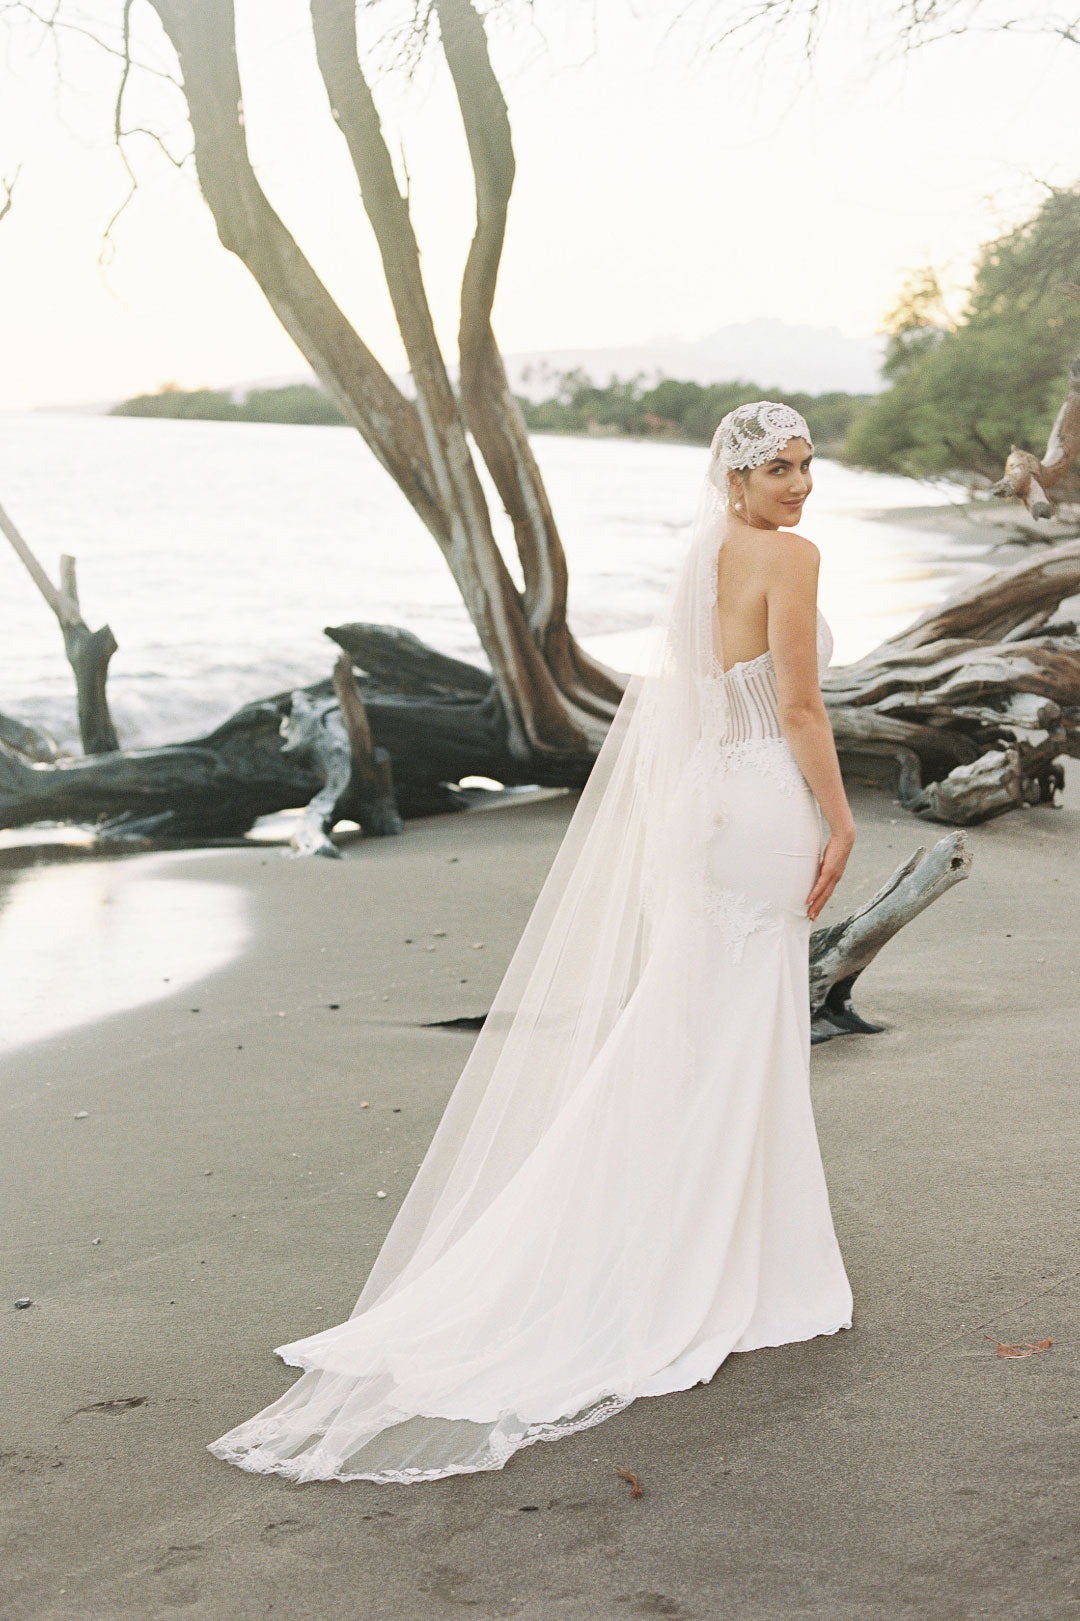 Bride on Beach in Arabella by Claire Pettibone 